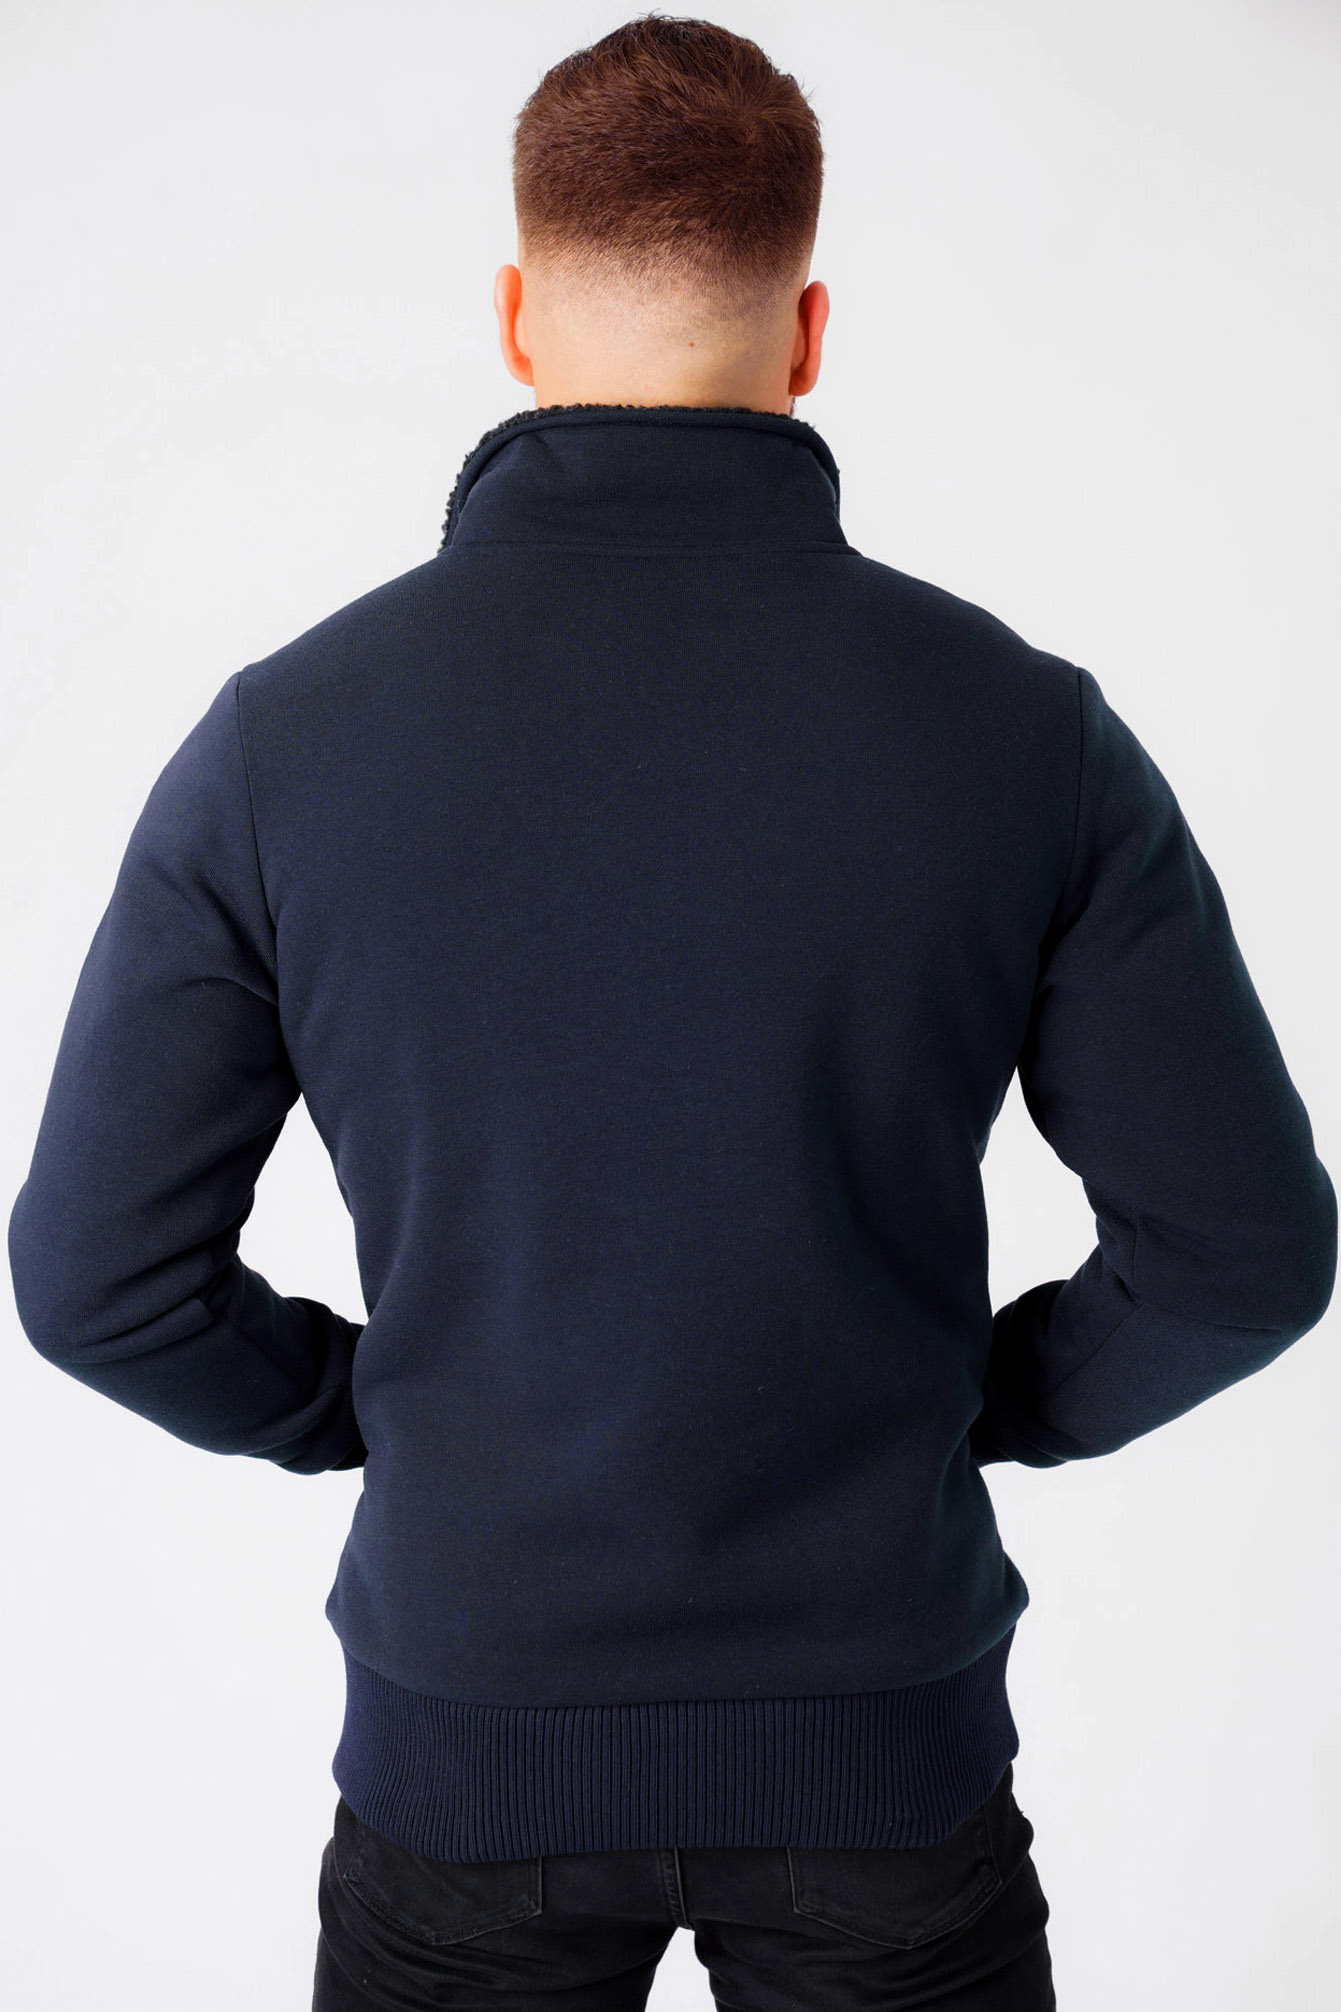 Dissident Men's Fleece Top Zip Up Funnel Neck Borg Lined Sweater Jacket ...